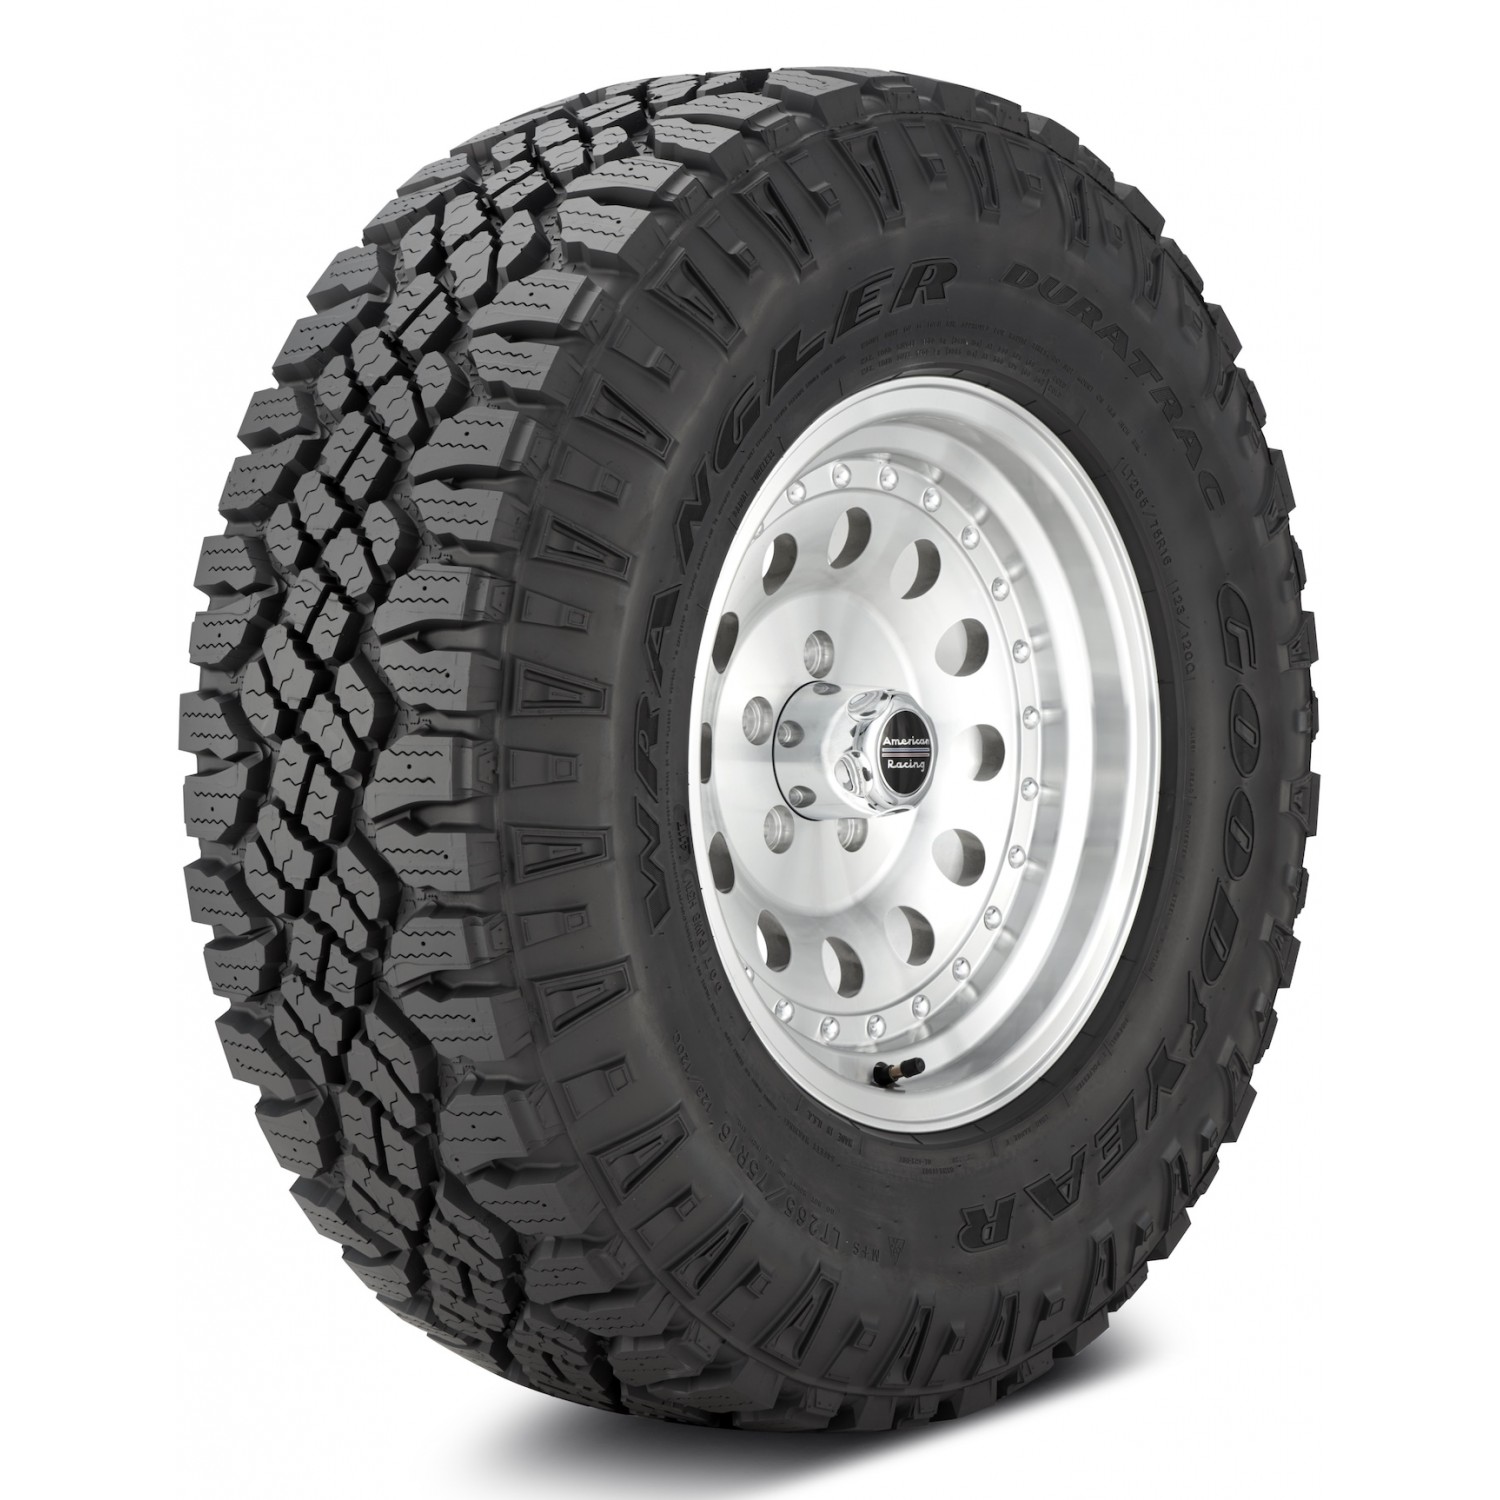 Goodyear Wrangler DuraTrac Black Sidewall Tire (LT225/75R16 115Q) vzn121171